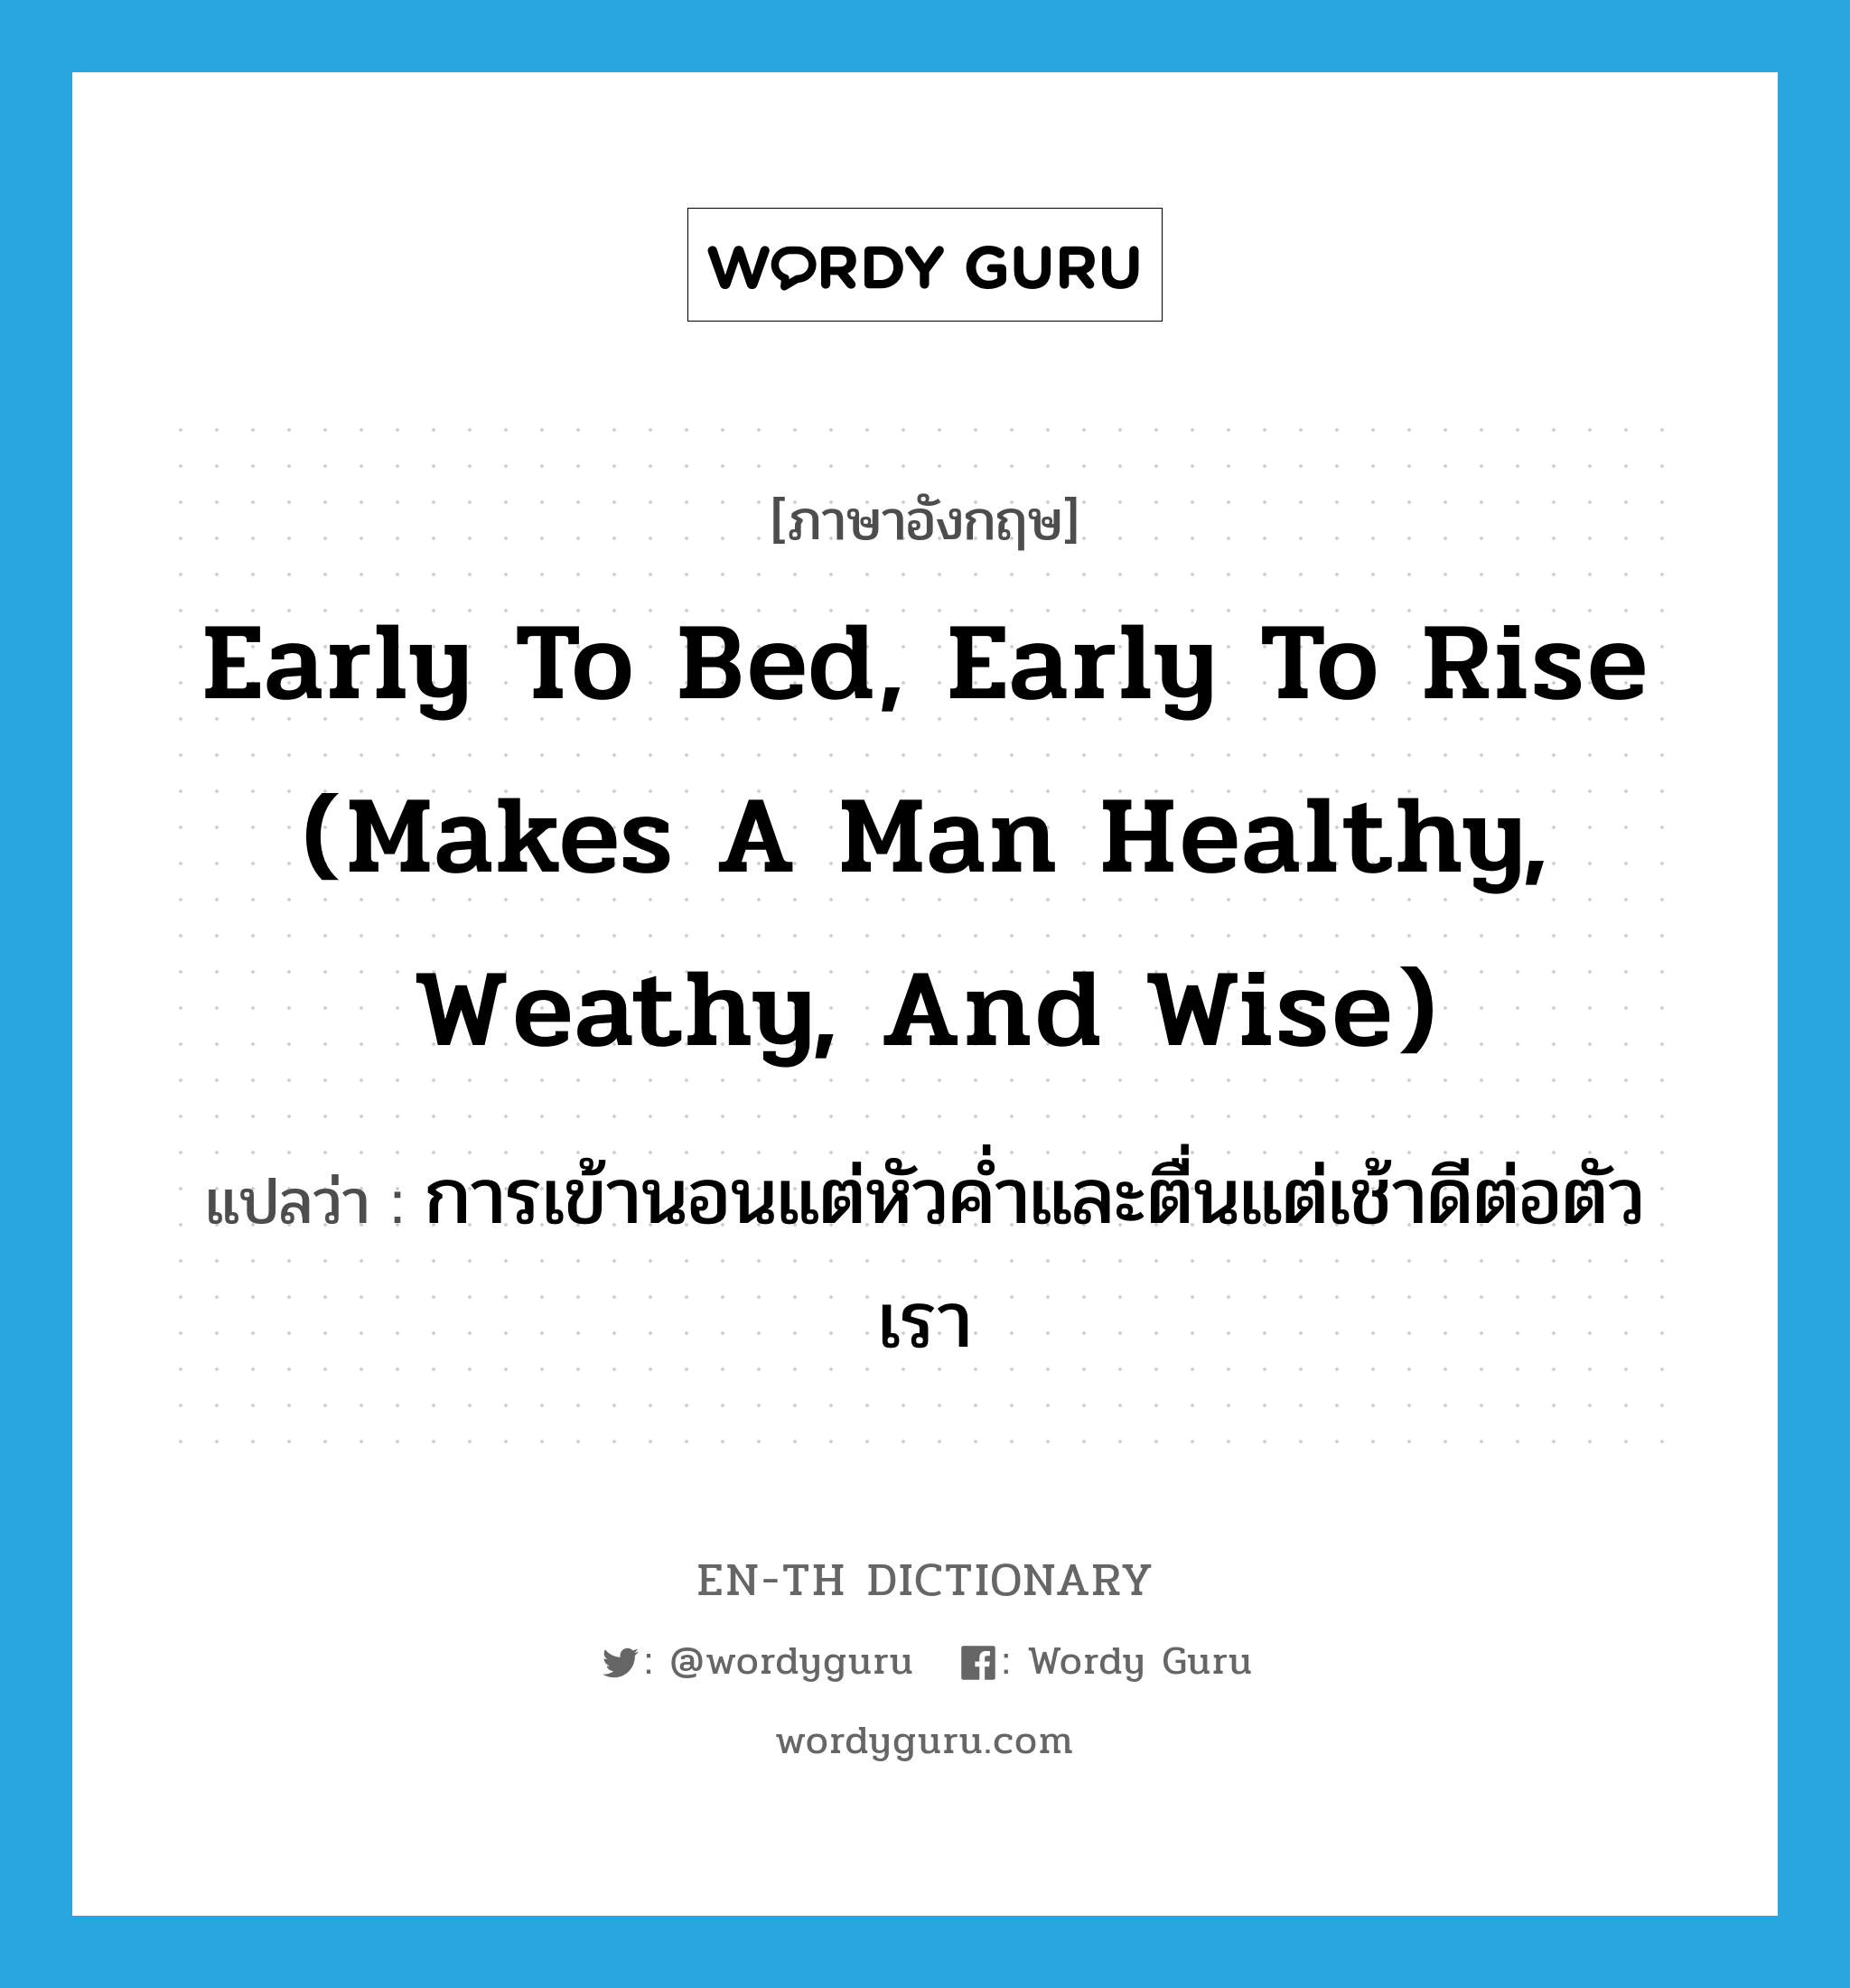 การเข้านอนแต่หัวค่ำและตื่นแต่เช้าดีต่อตัวเรา ภาษาอังกฤษ?, คำศัพท์ภาษาอังกฤษ การเข้านอนแต่หัวค่ำและตื่นแต่เช้าดีต่อตัวเรา แปลว่า Early to bed, early to rise (makes a man healthy, weathy, and wise) ประเภท IDM หมวด IDM